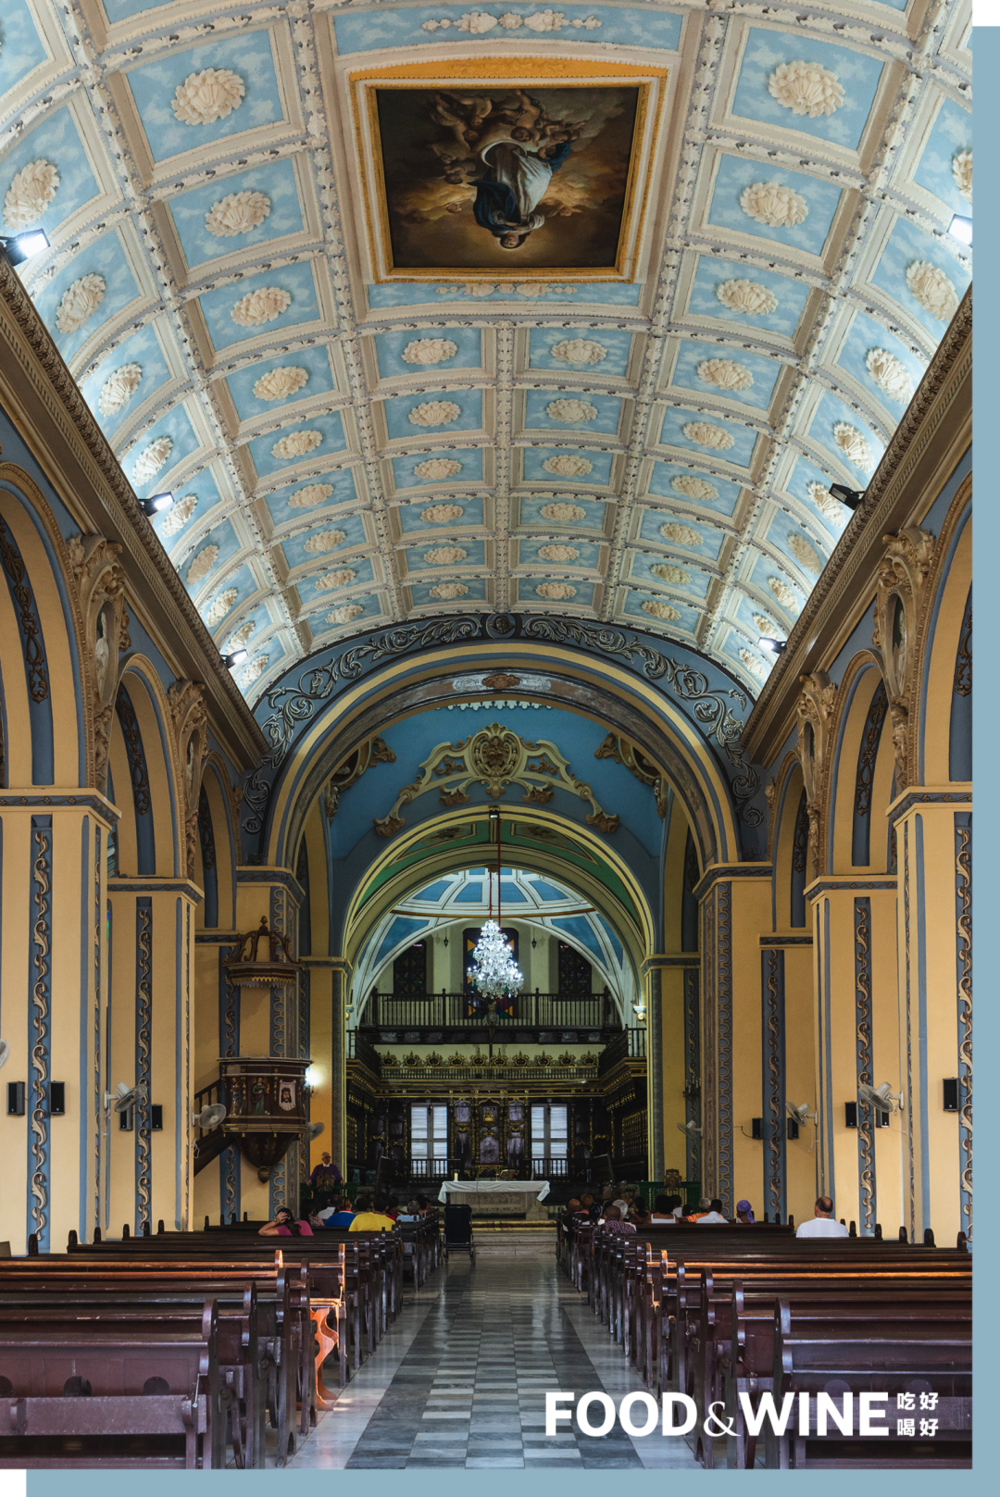 圣母升天大教堂内装饰繁复的是壁画穹顶和全手工制作的坐席。<br>